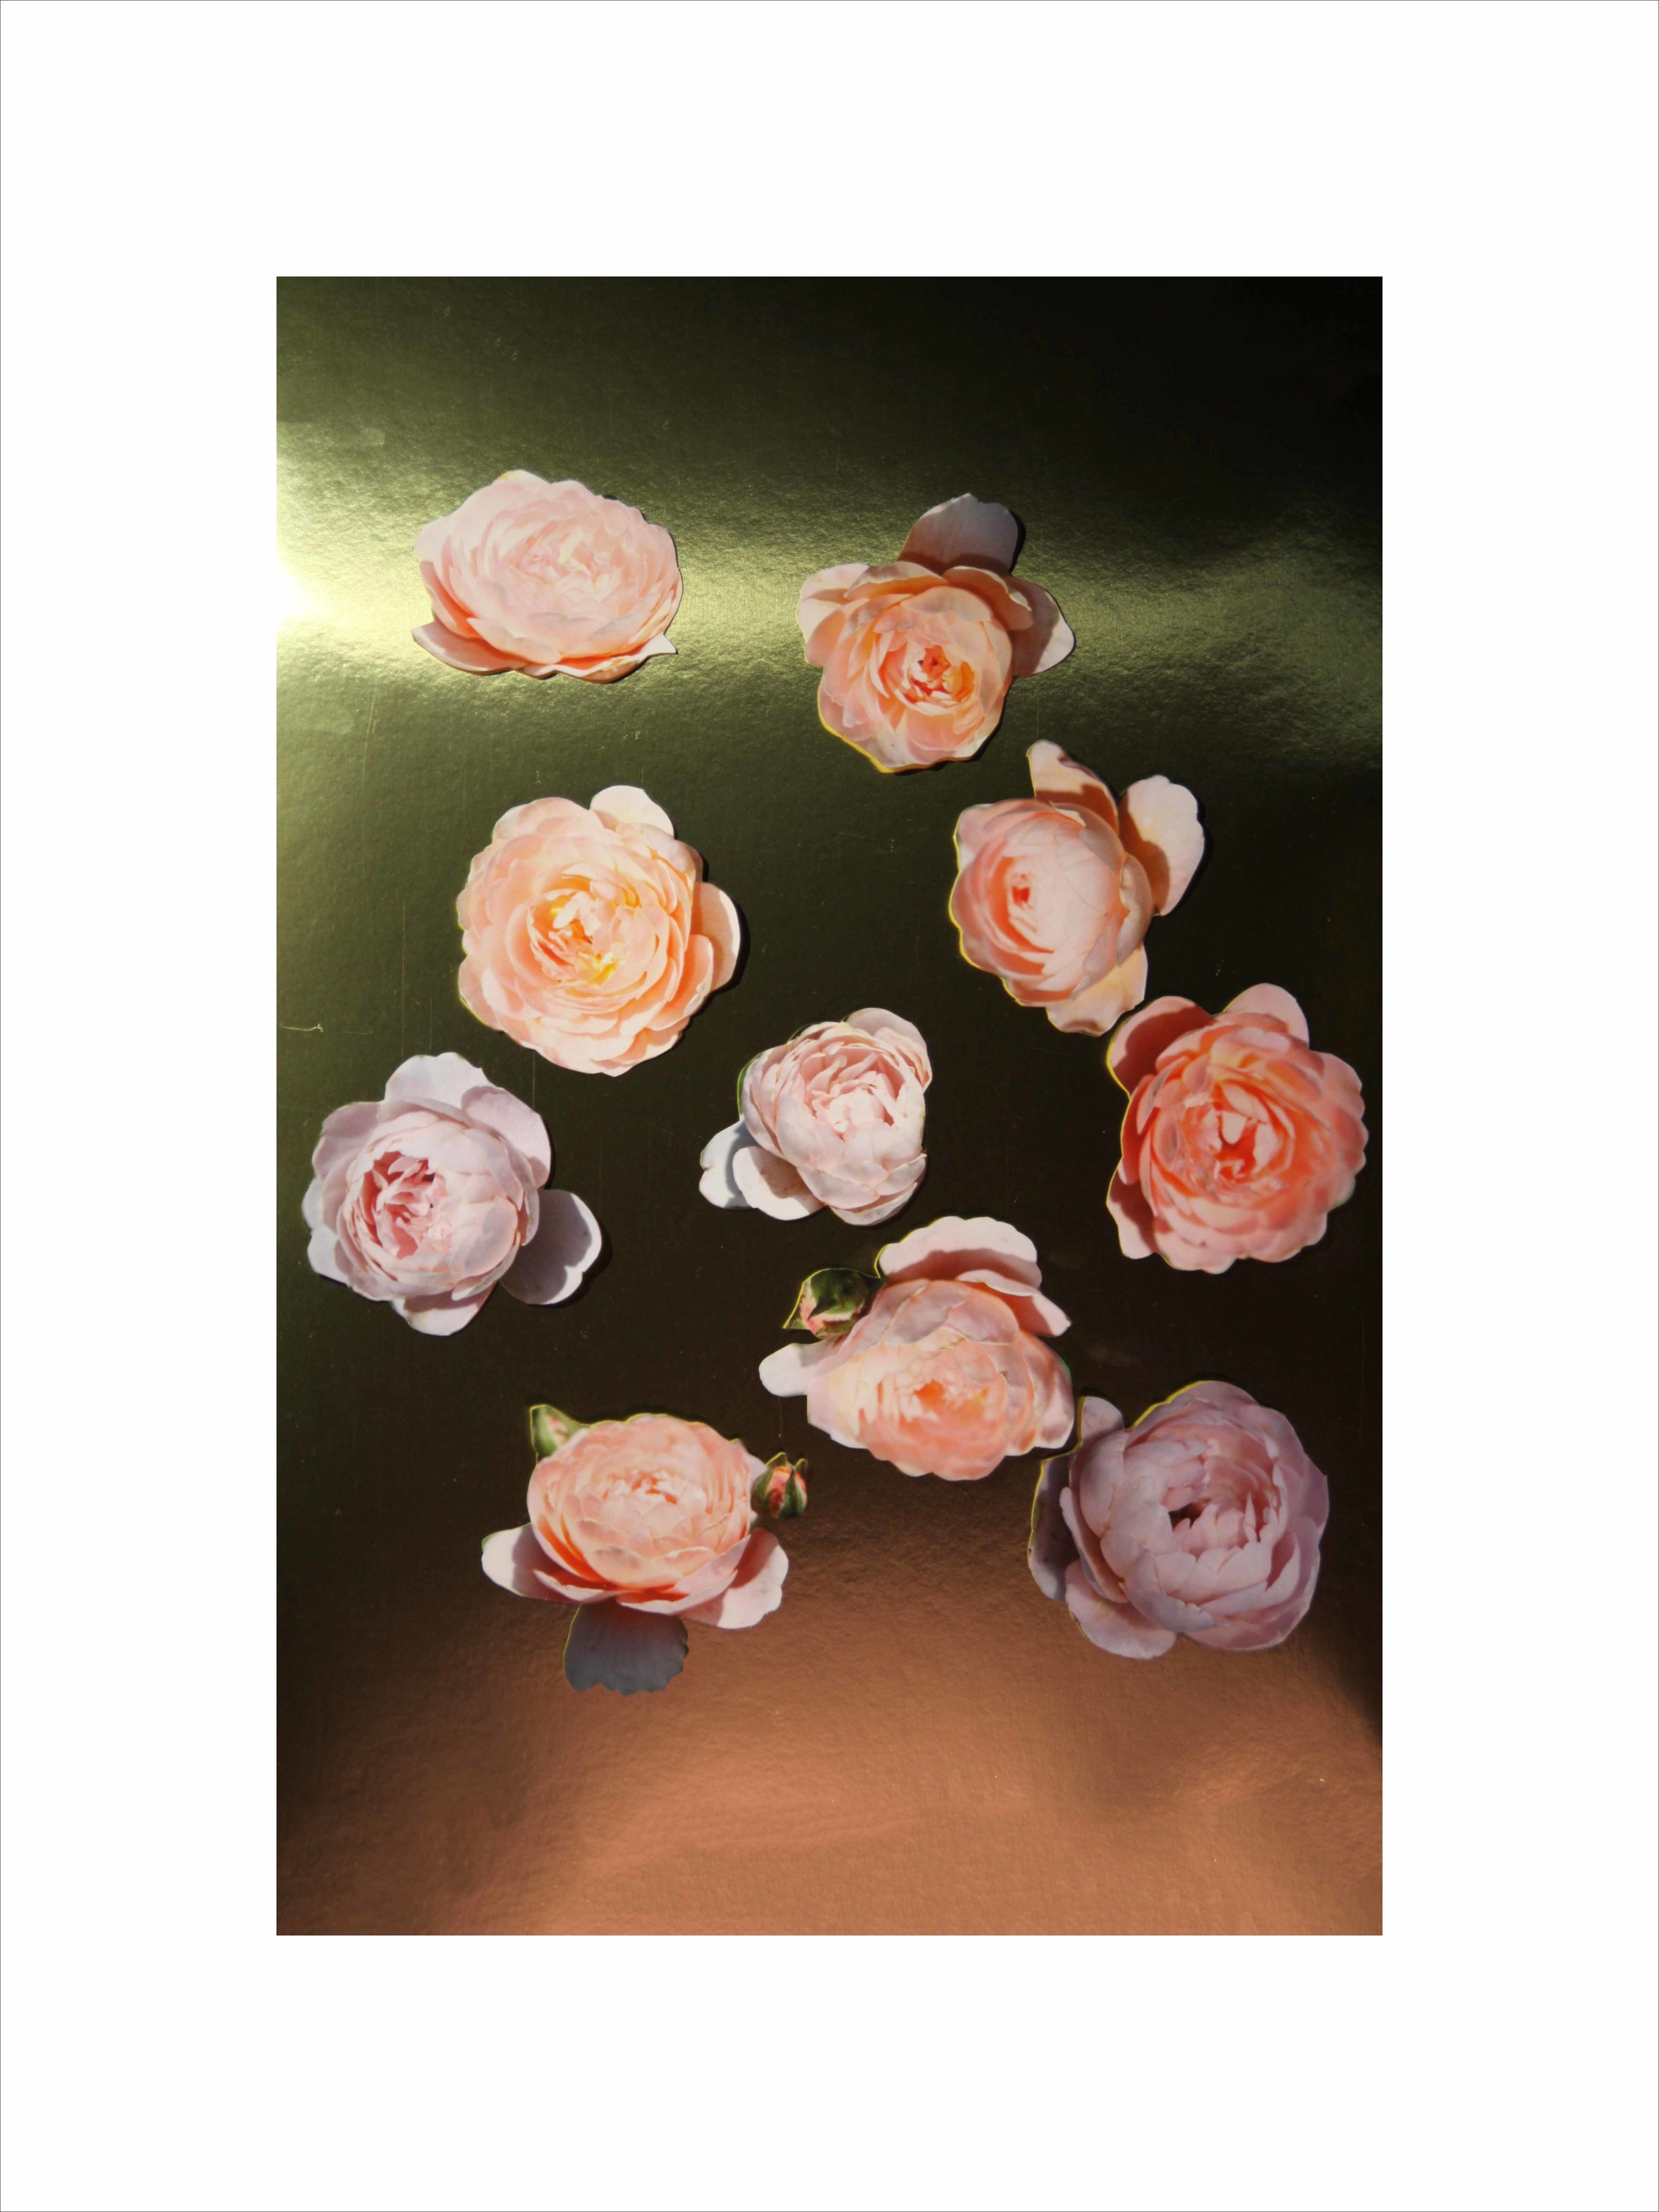    Queen of Sweden Roses II,   2019  Digital photography  32 x 24 in. 